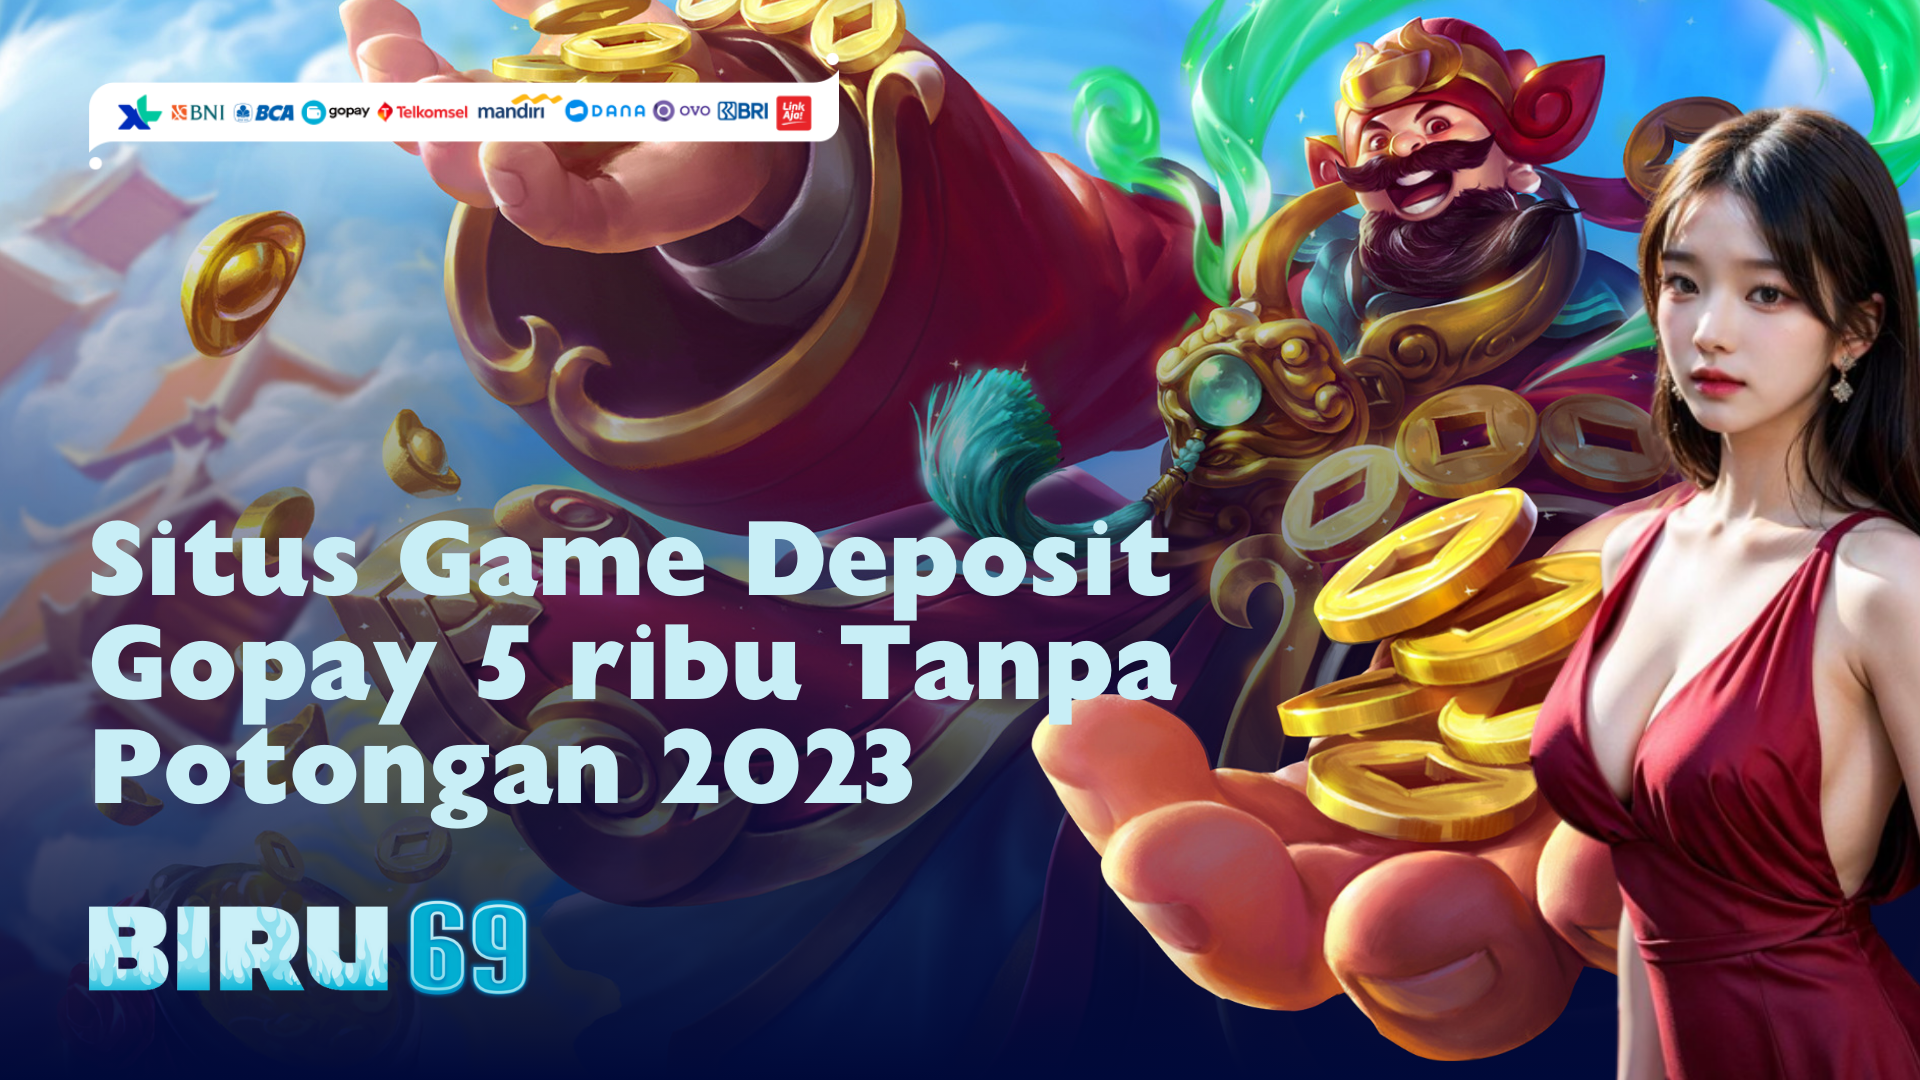 Situs Game Deposit Gopay 5 ribu Tanpa Potongan 2023